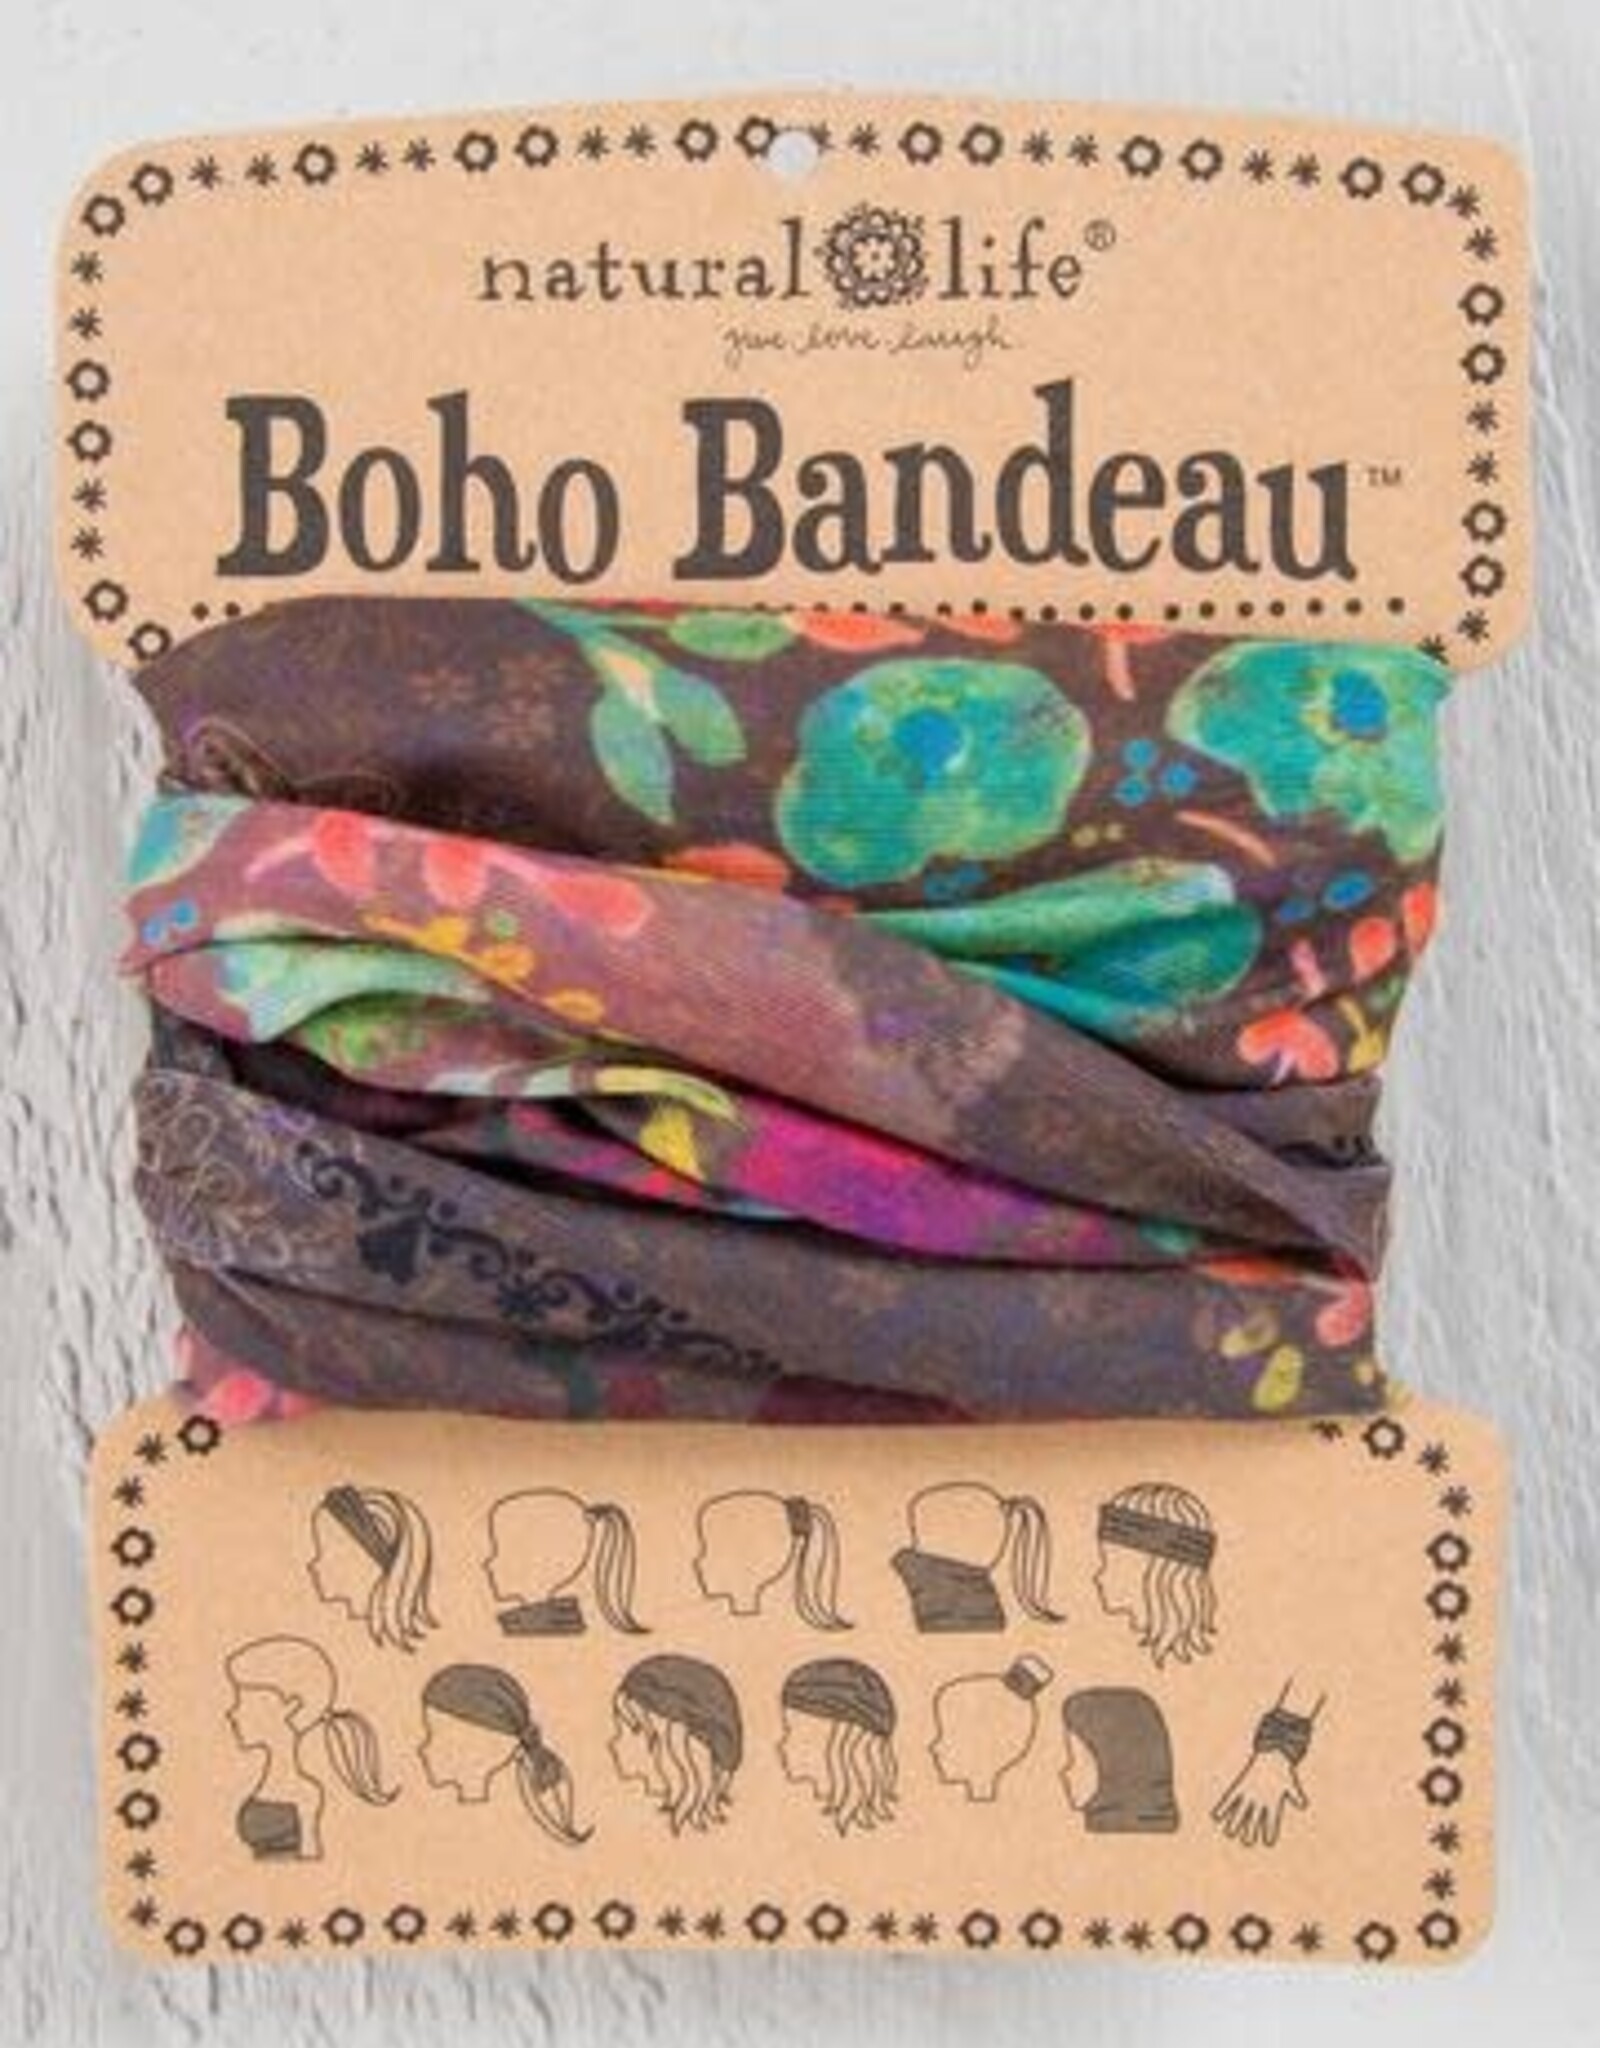 NL Boho Half Bandeau - Kaly Clothing